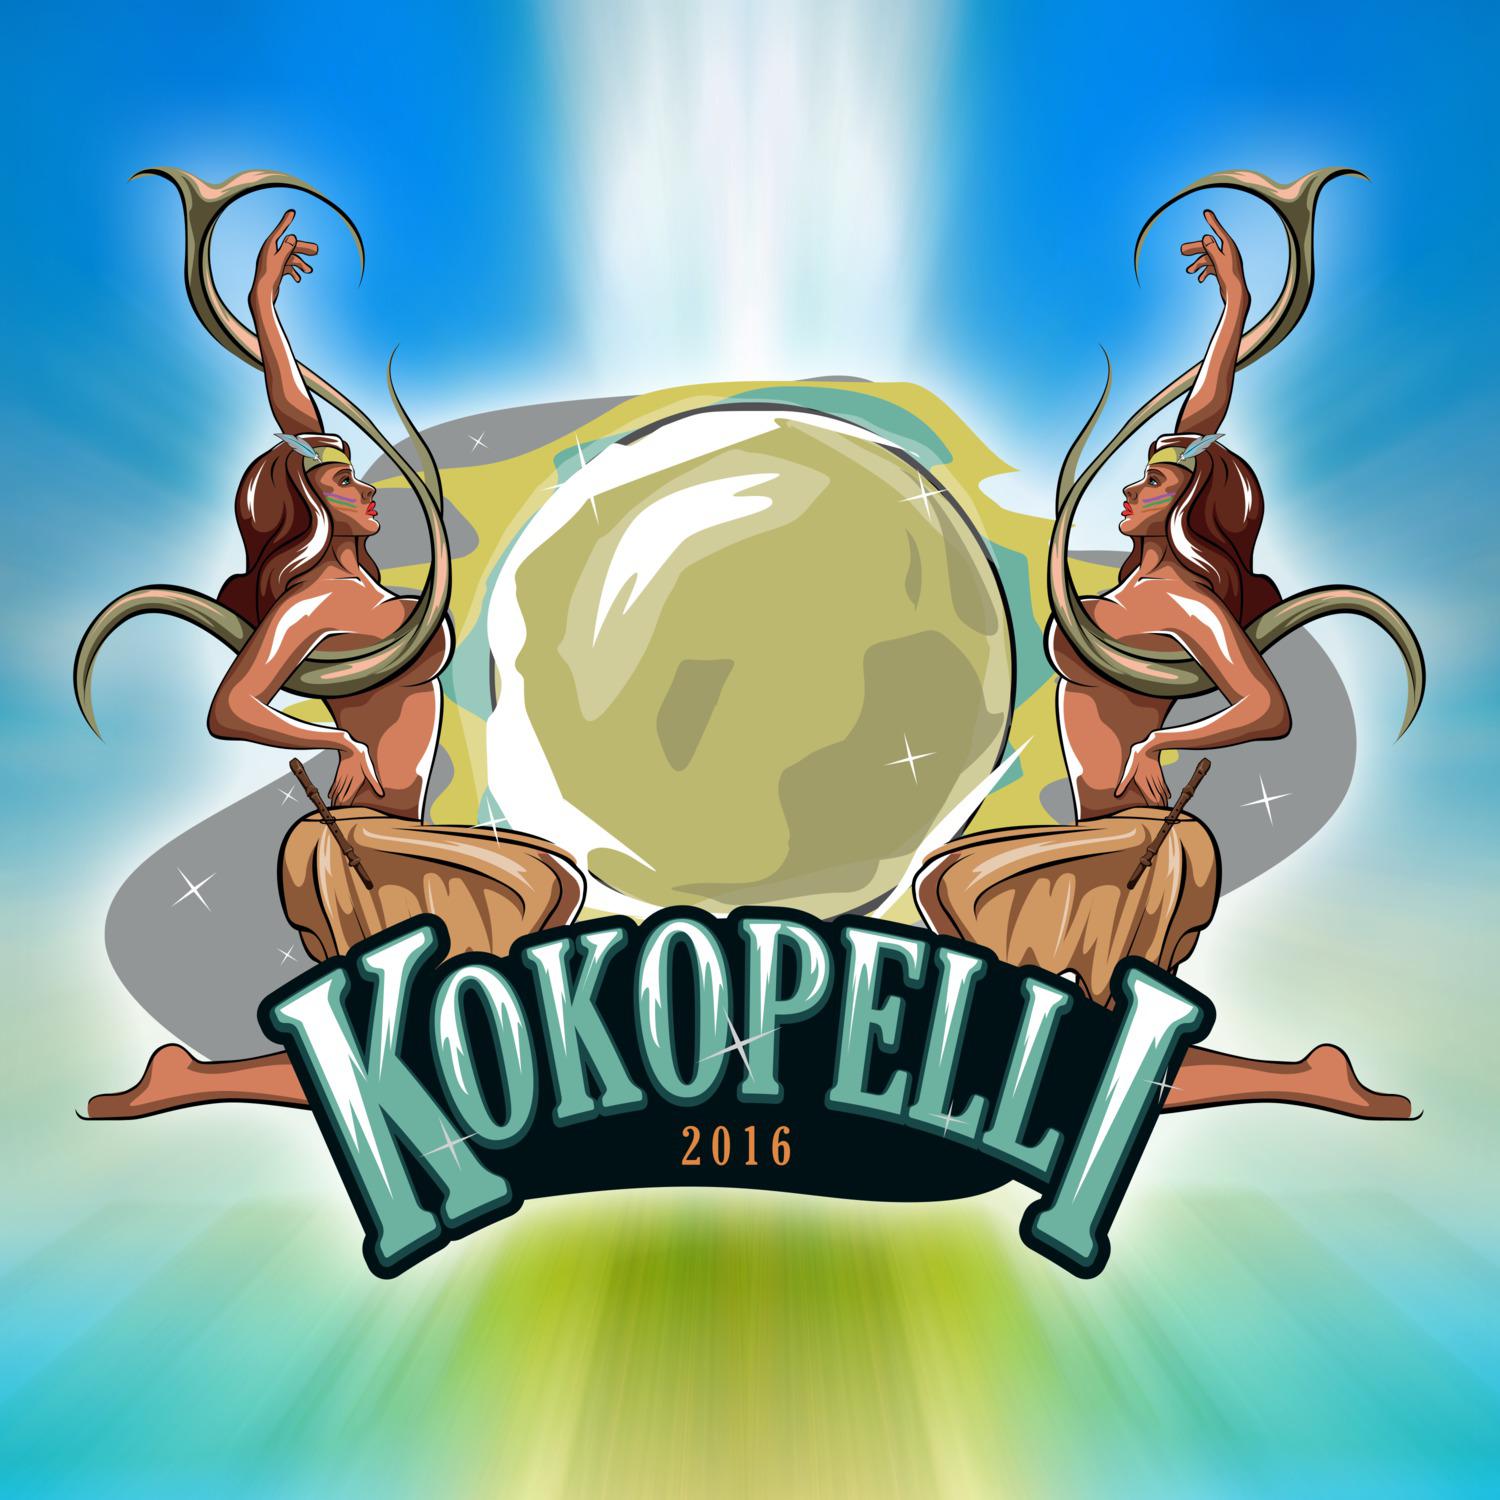 Kokopelli 2016